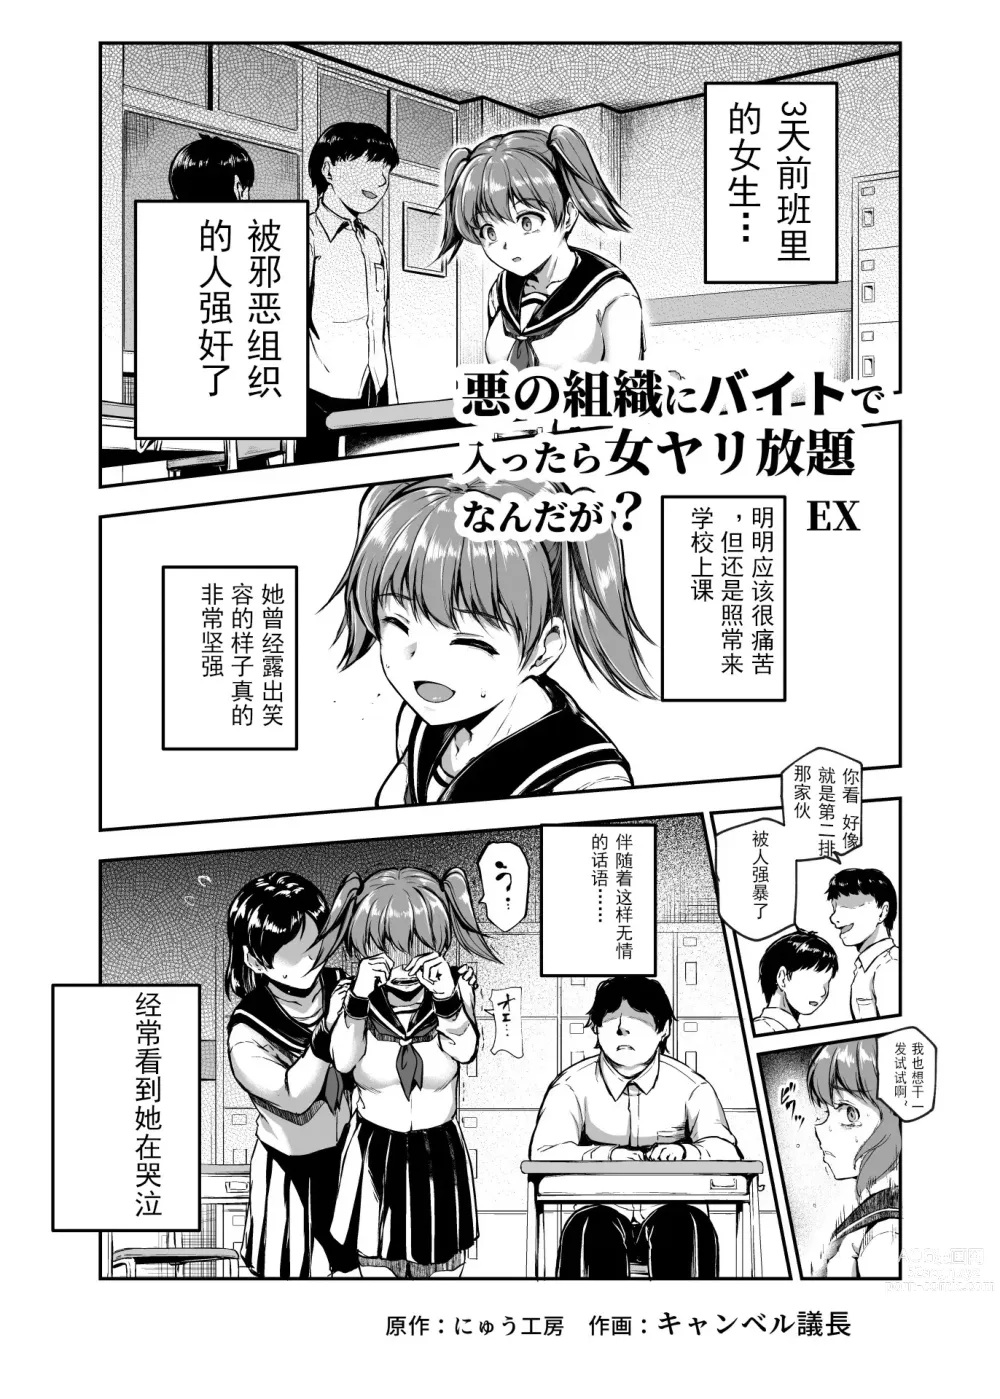 Page 3 of doujinshi 进入邪恶组织工作的话，就可以放肆享受女人性爱自助了吗?EX